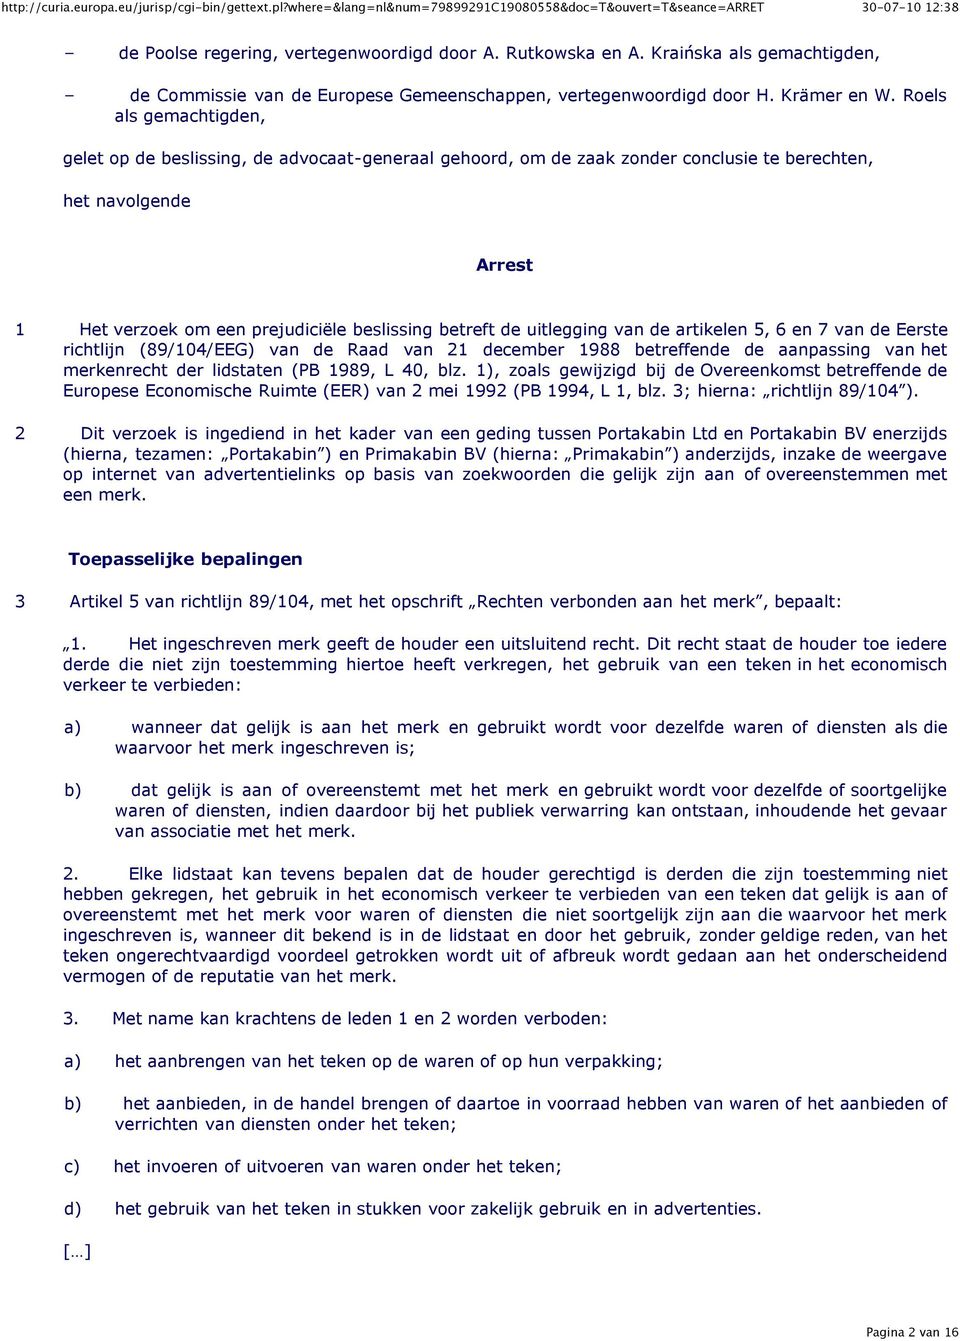 uitlegging van de artikelen 5, 6 en 7 van de Eerste richtlijn (89/104/EEG) van de Raad van 21 december 1988 betreffende de aanpassing van het merkenrecht der lidstaten (PB 1989, L 40, blz.